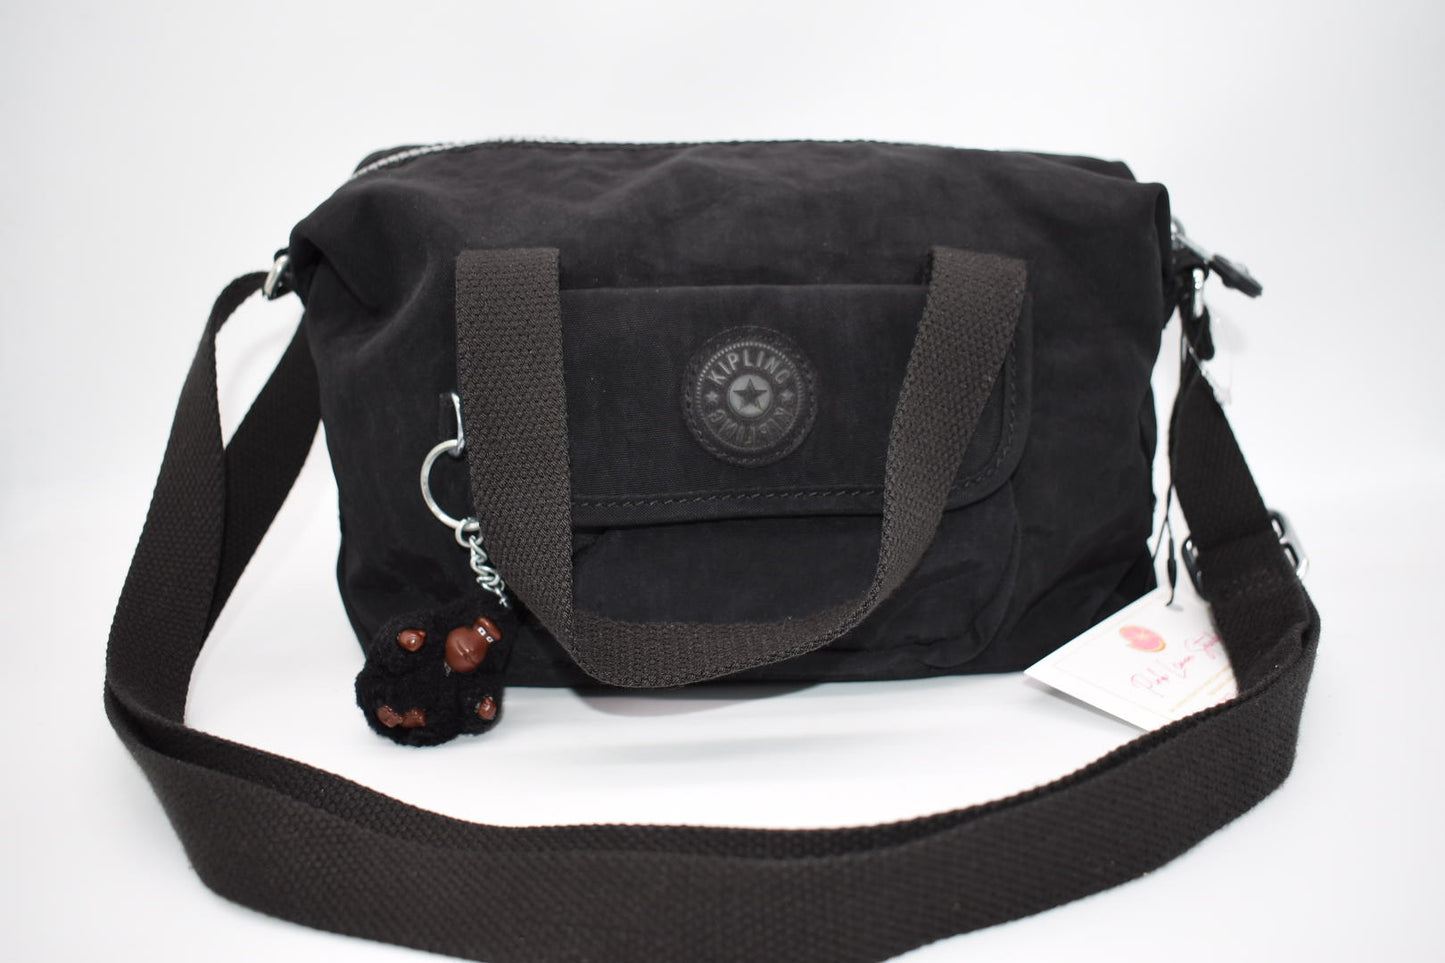 Kipling Black Convertible Shoulder Bag